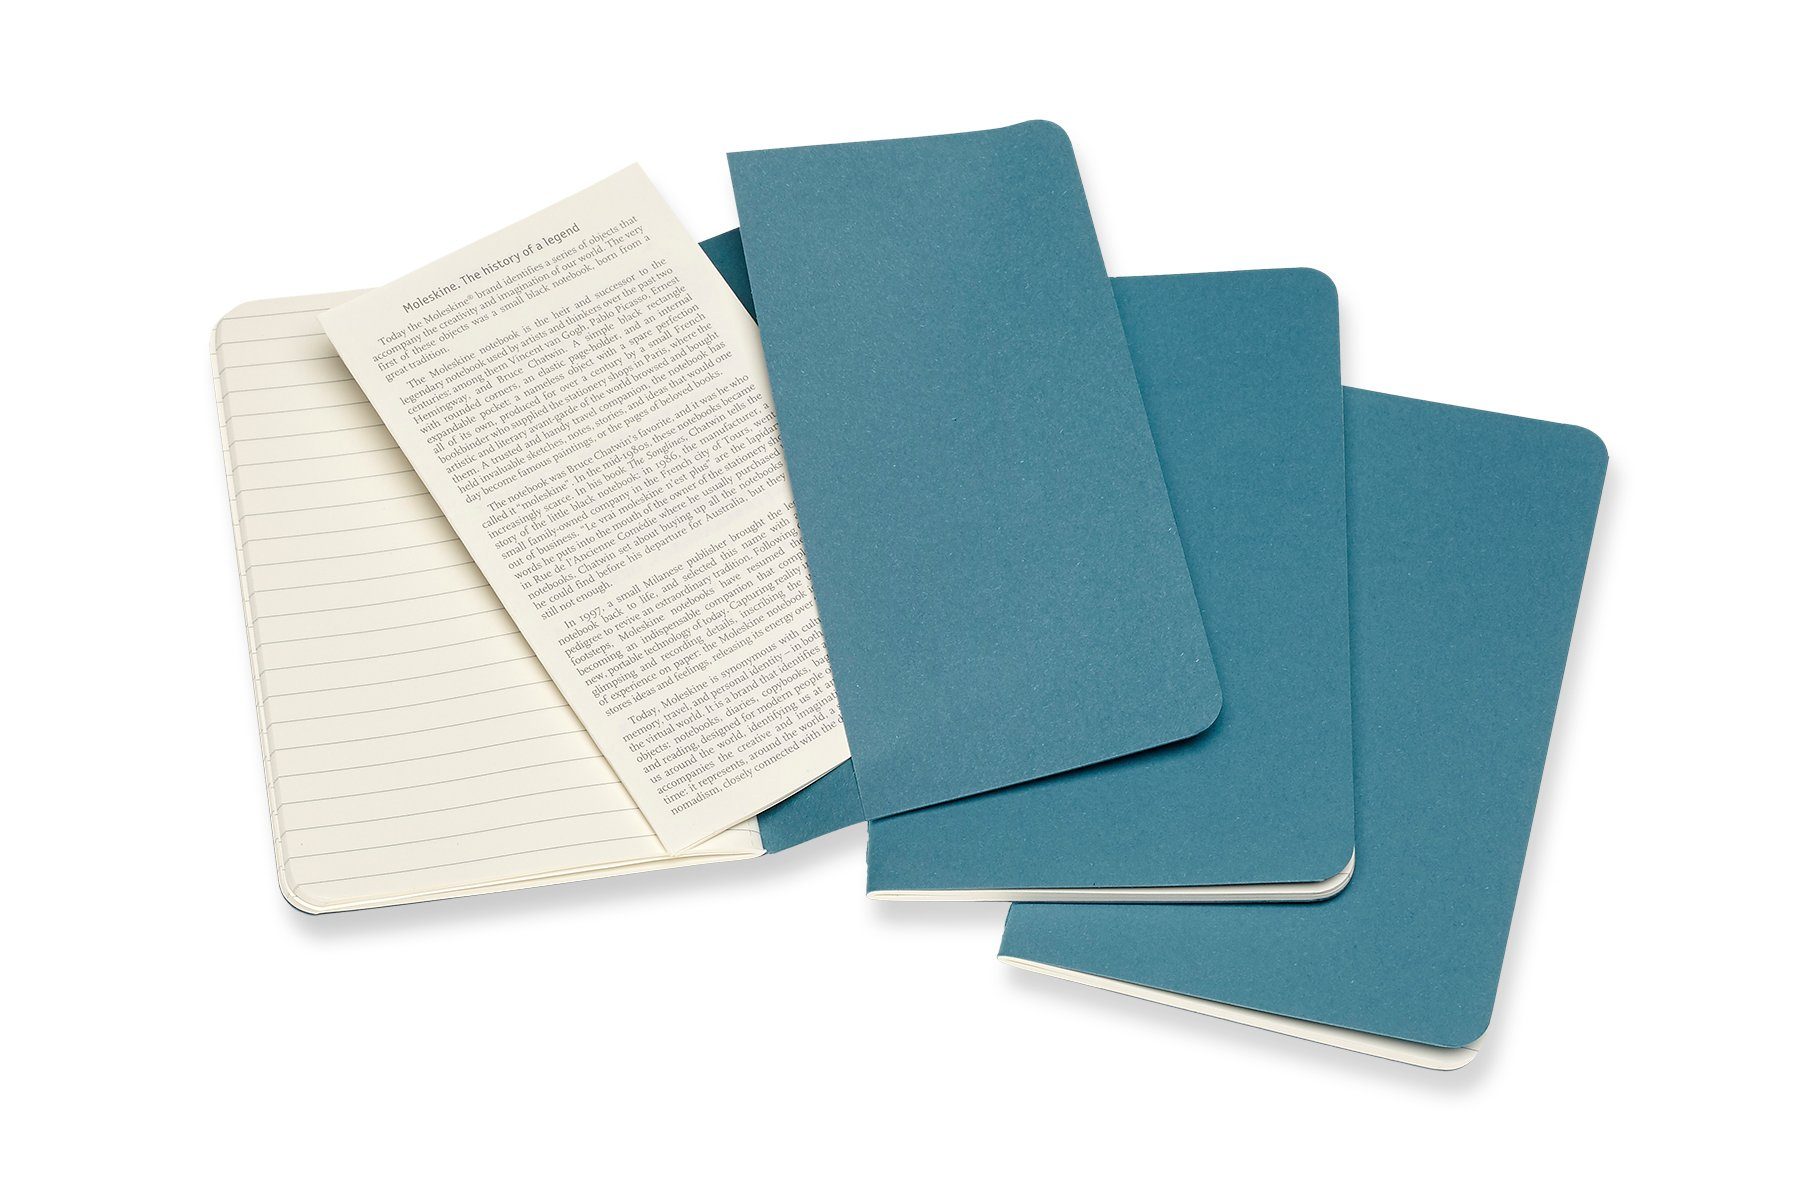 Kartoneinband 70g-Papier 3er Lebhaftes Set - Cahier - MOLESKINE Notizheft, mit Blau